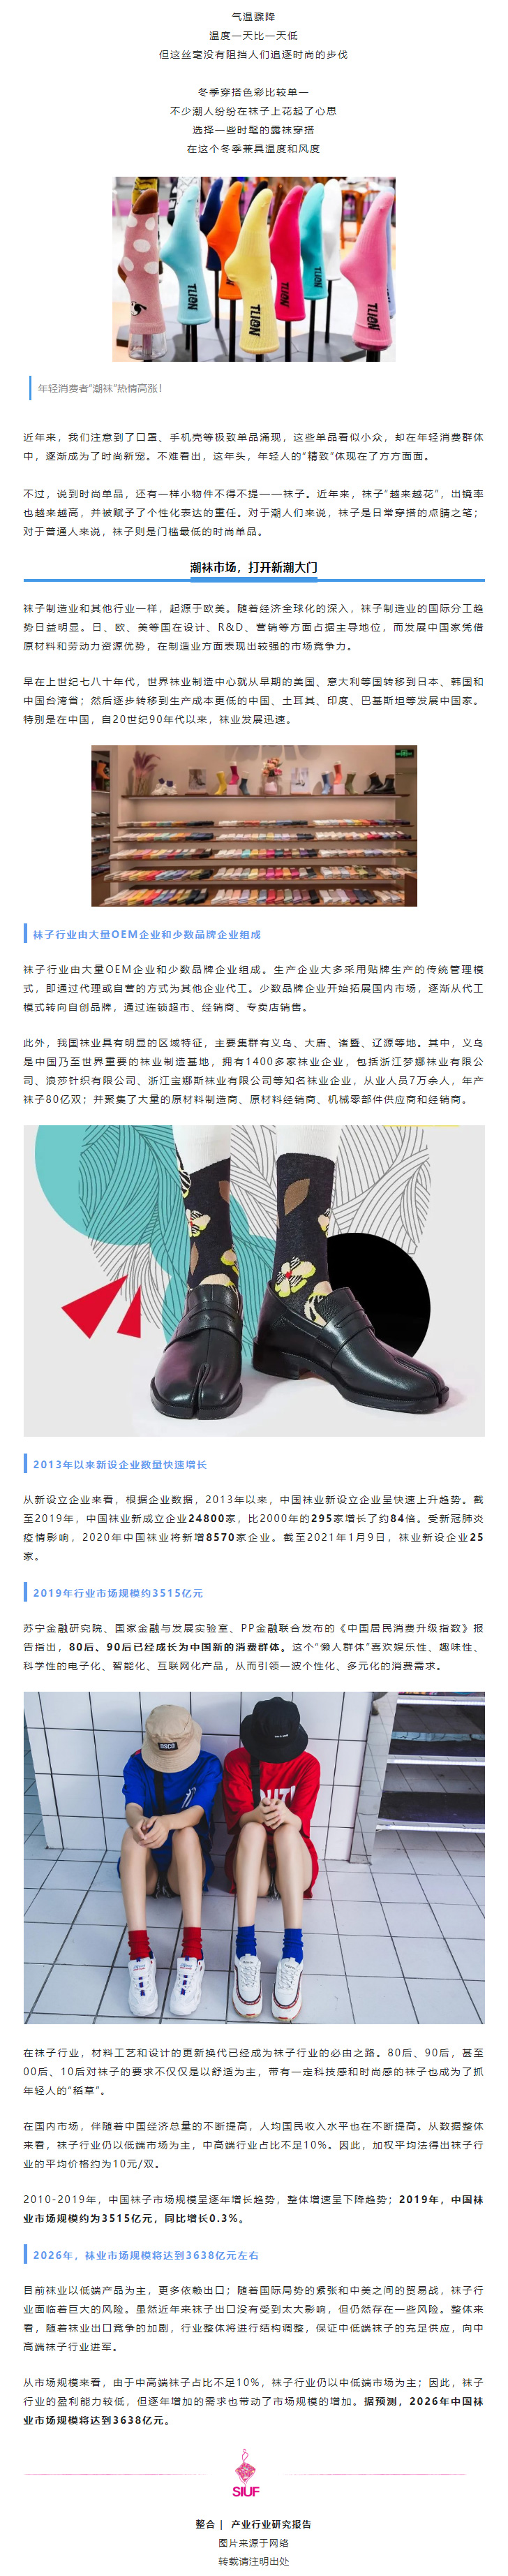 品类观察 _ 中国袜子行业市场战略规划分析报告.jpg